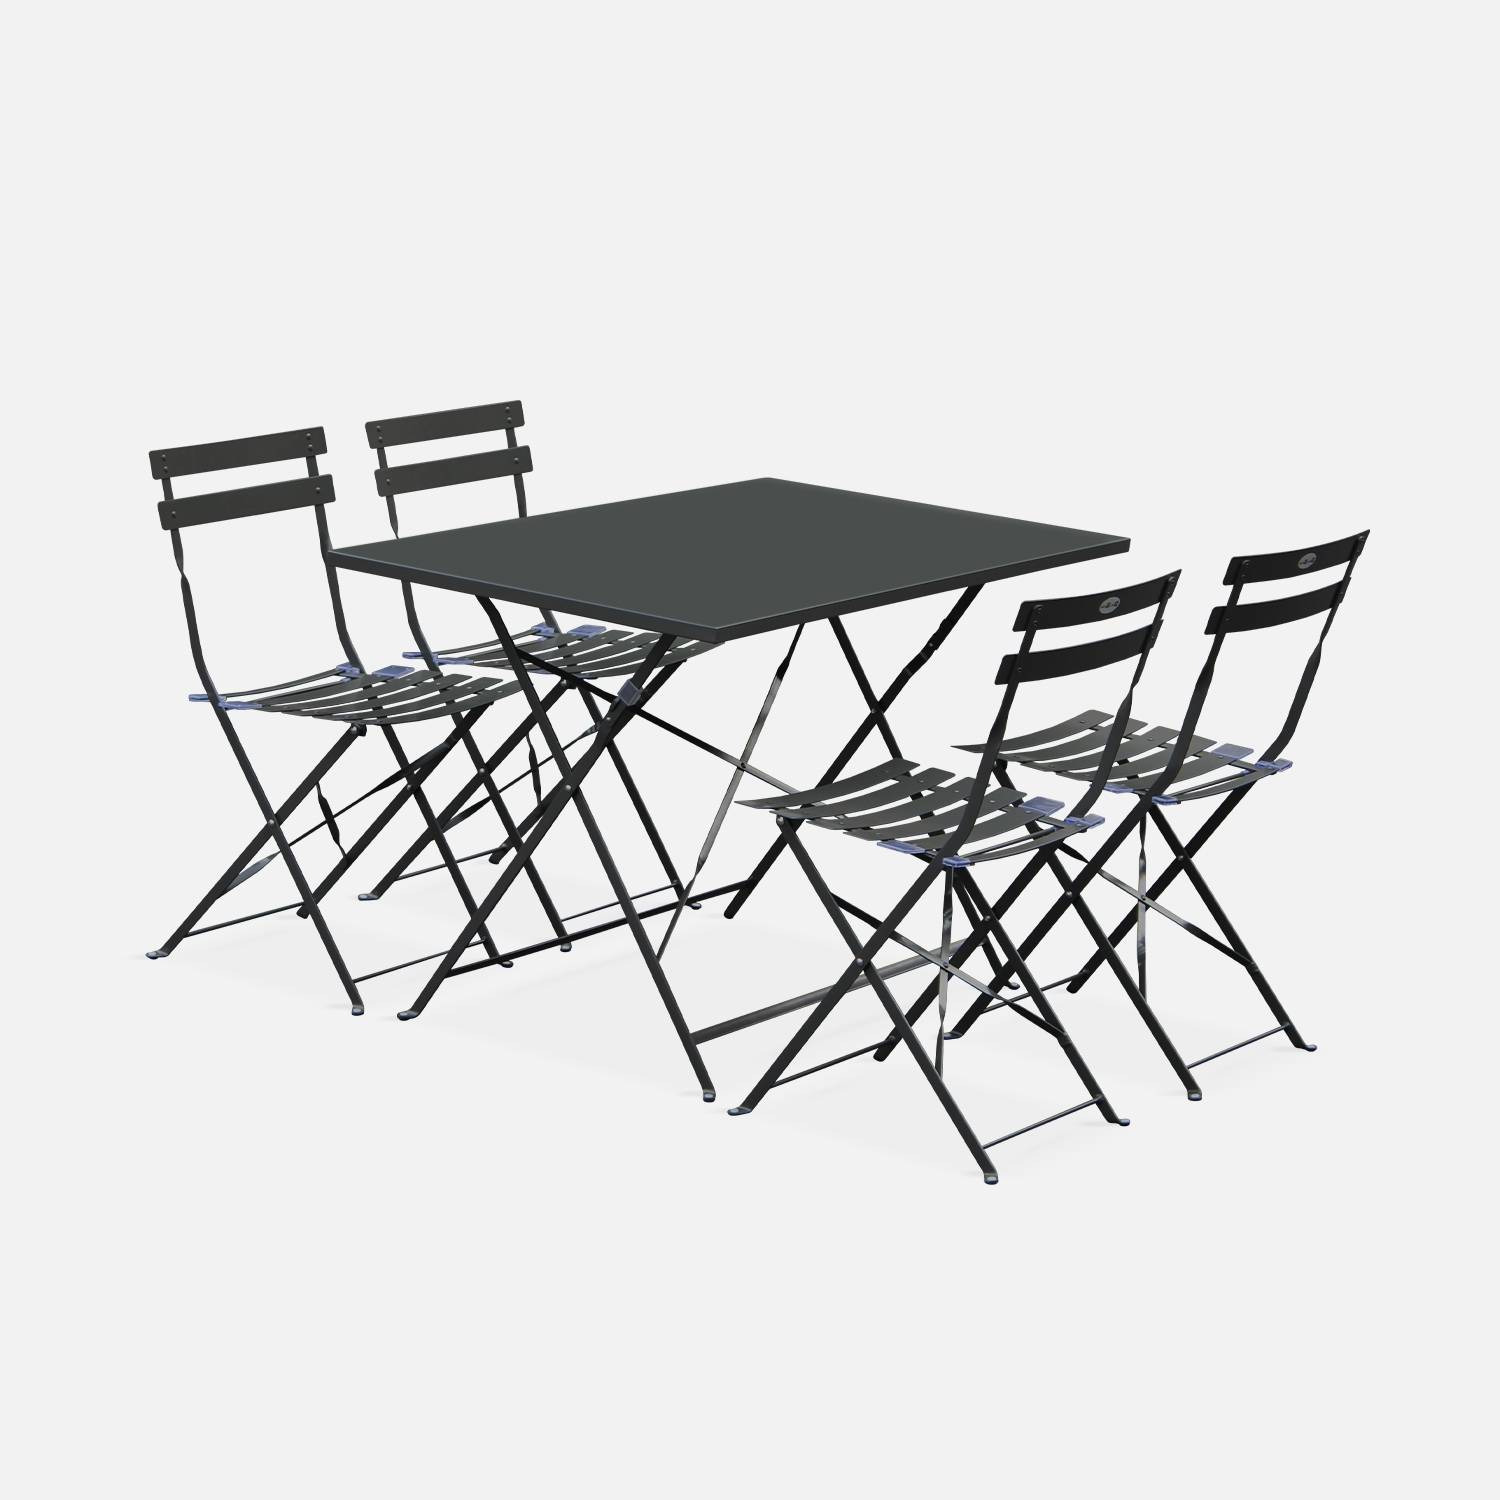 Tavolo da giardino, bar bistrot, pieghevole, modello: Emilia colore: Antracite, 4 sedie pieghevoli, acciaio termolaccato | sweeek